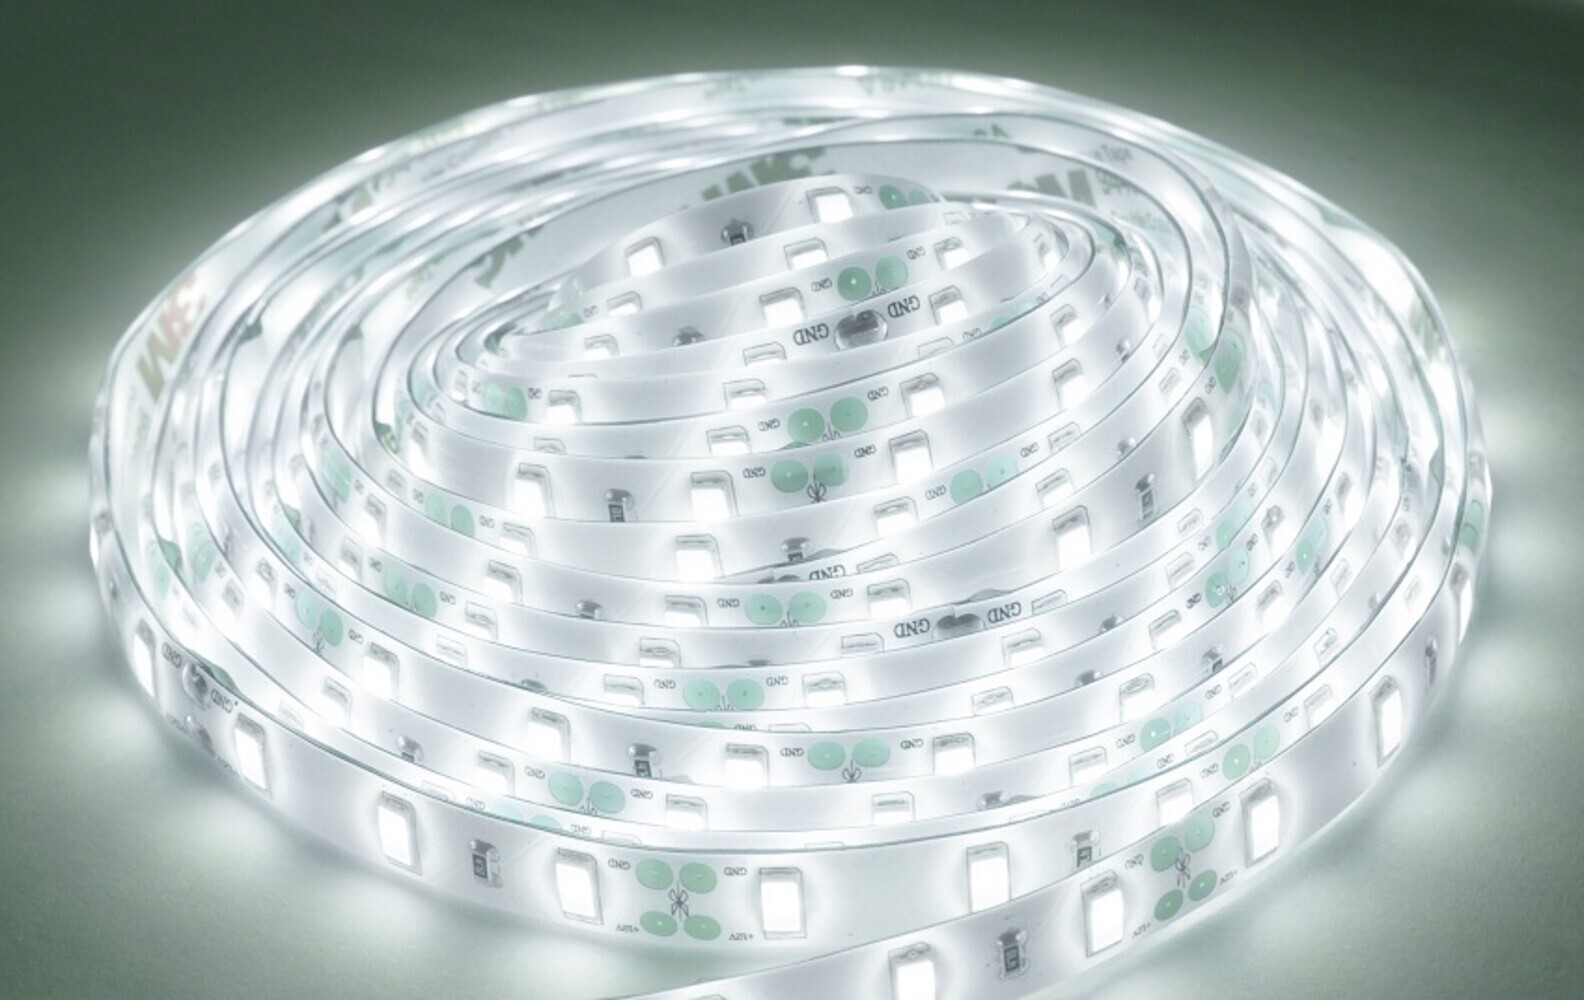 Hochleistungsfähiger LED Streifen von LED Universum in kaltweiß, mit 60 LEDs pro Meter und IP65 Schutzklasse